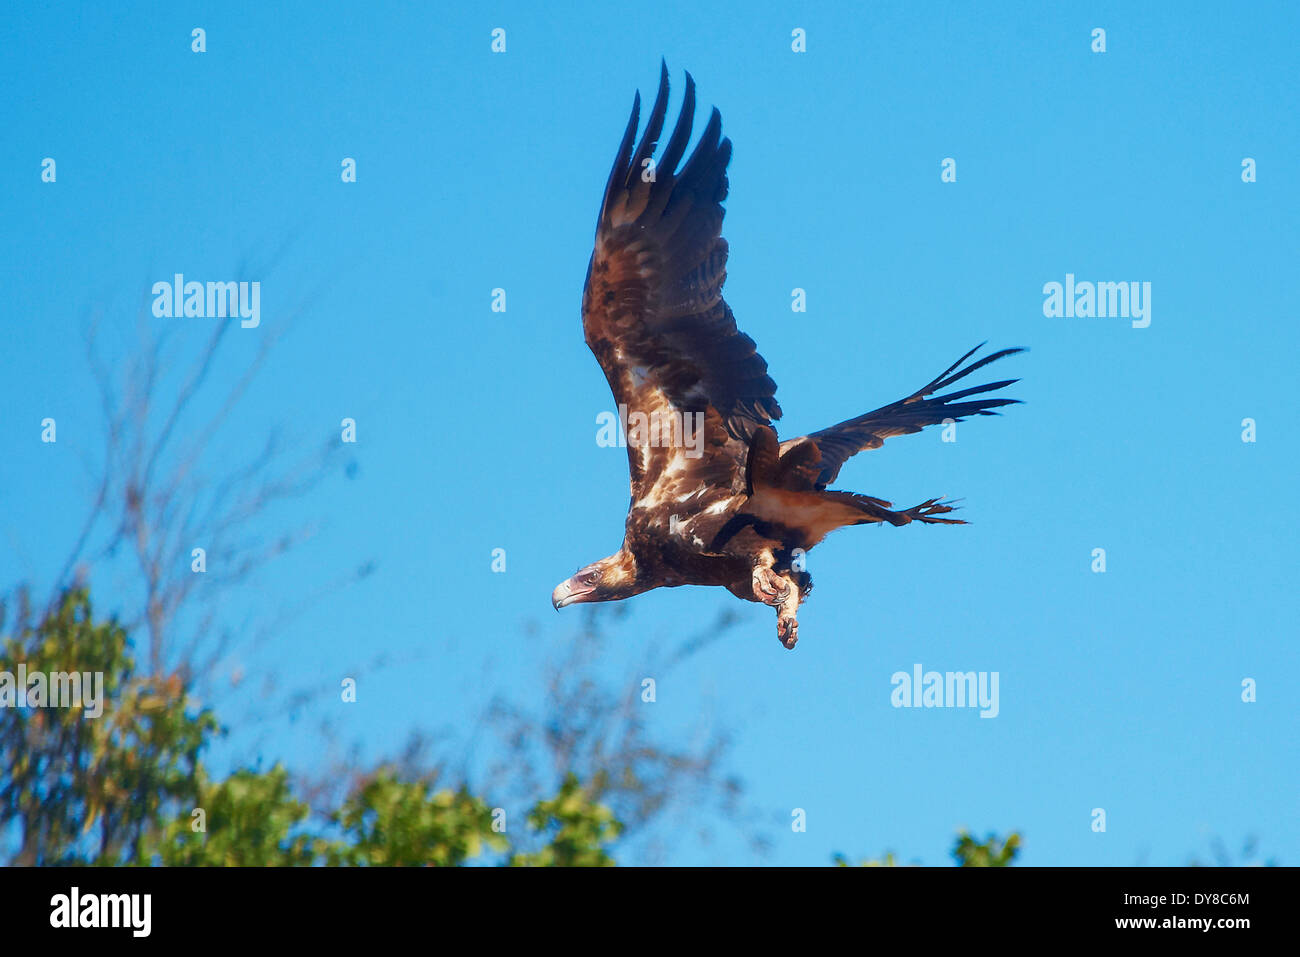 Australia, Borroloola, Territorio del Norte, los animales, las aves, el águila, el vuelo, volar Foto de stock